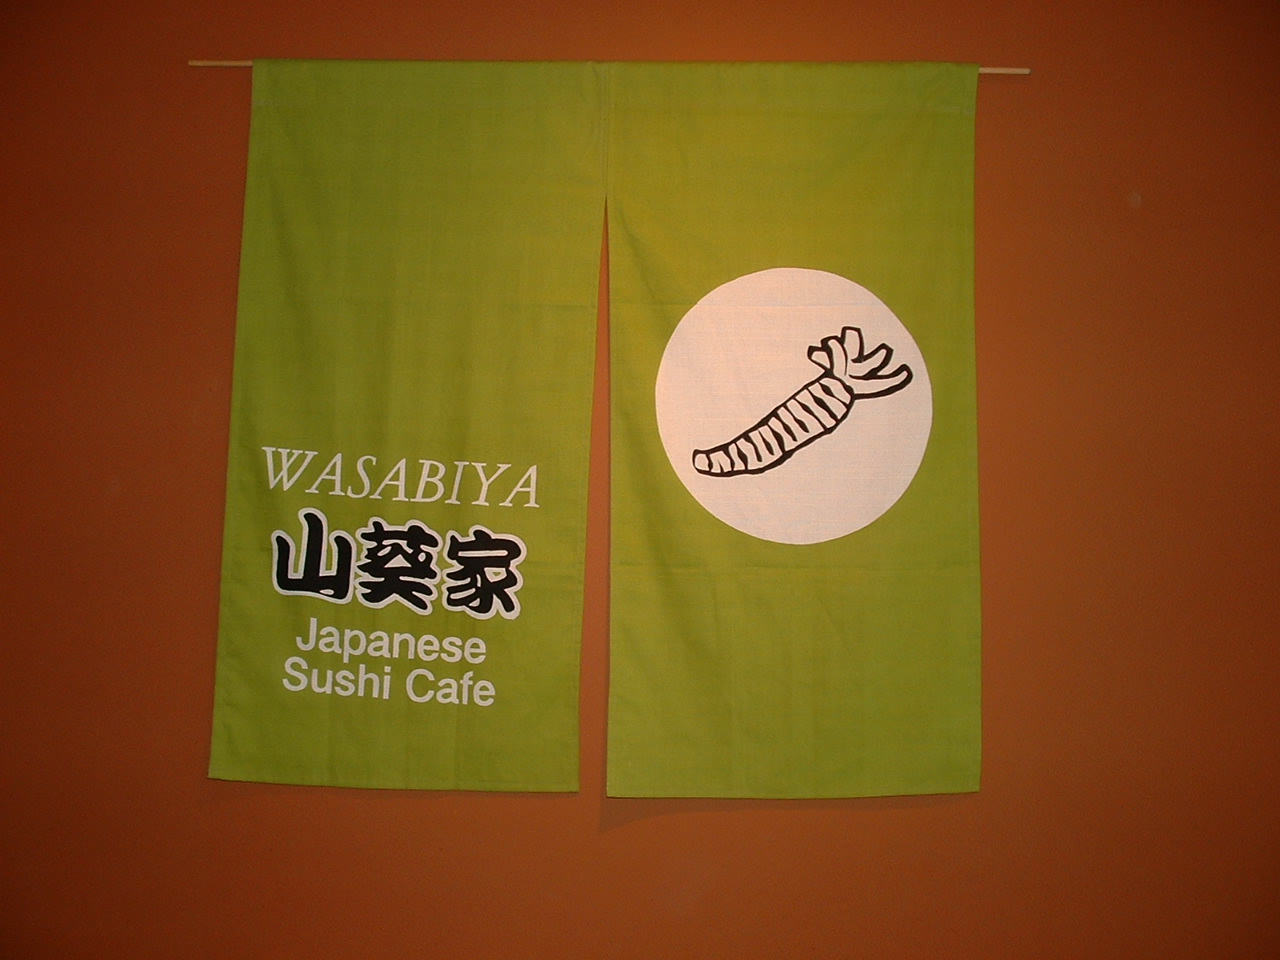 キャンベルリバーのレストランで寿司シェフ・クック・ディッシュウォッシャー大募集 - WASABIYA Japanese Sushi Cafe Title image